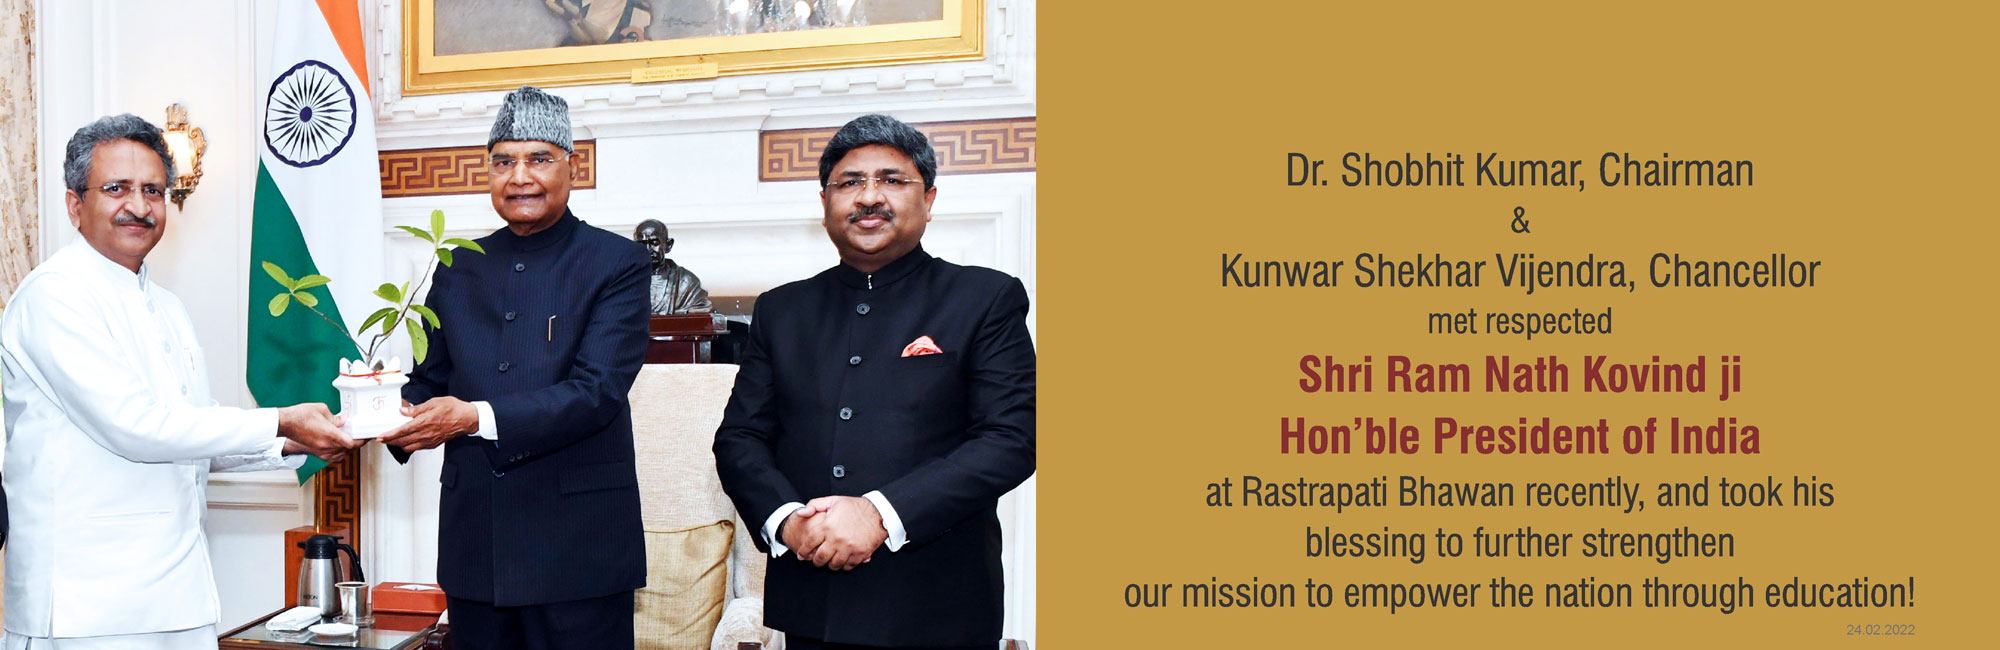 Met respected Shri Ram Nath Kovind Ji Hon'ble President of India